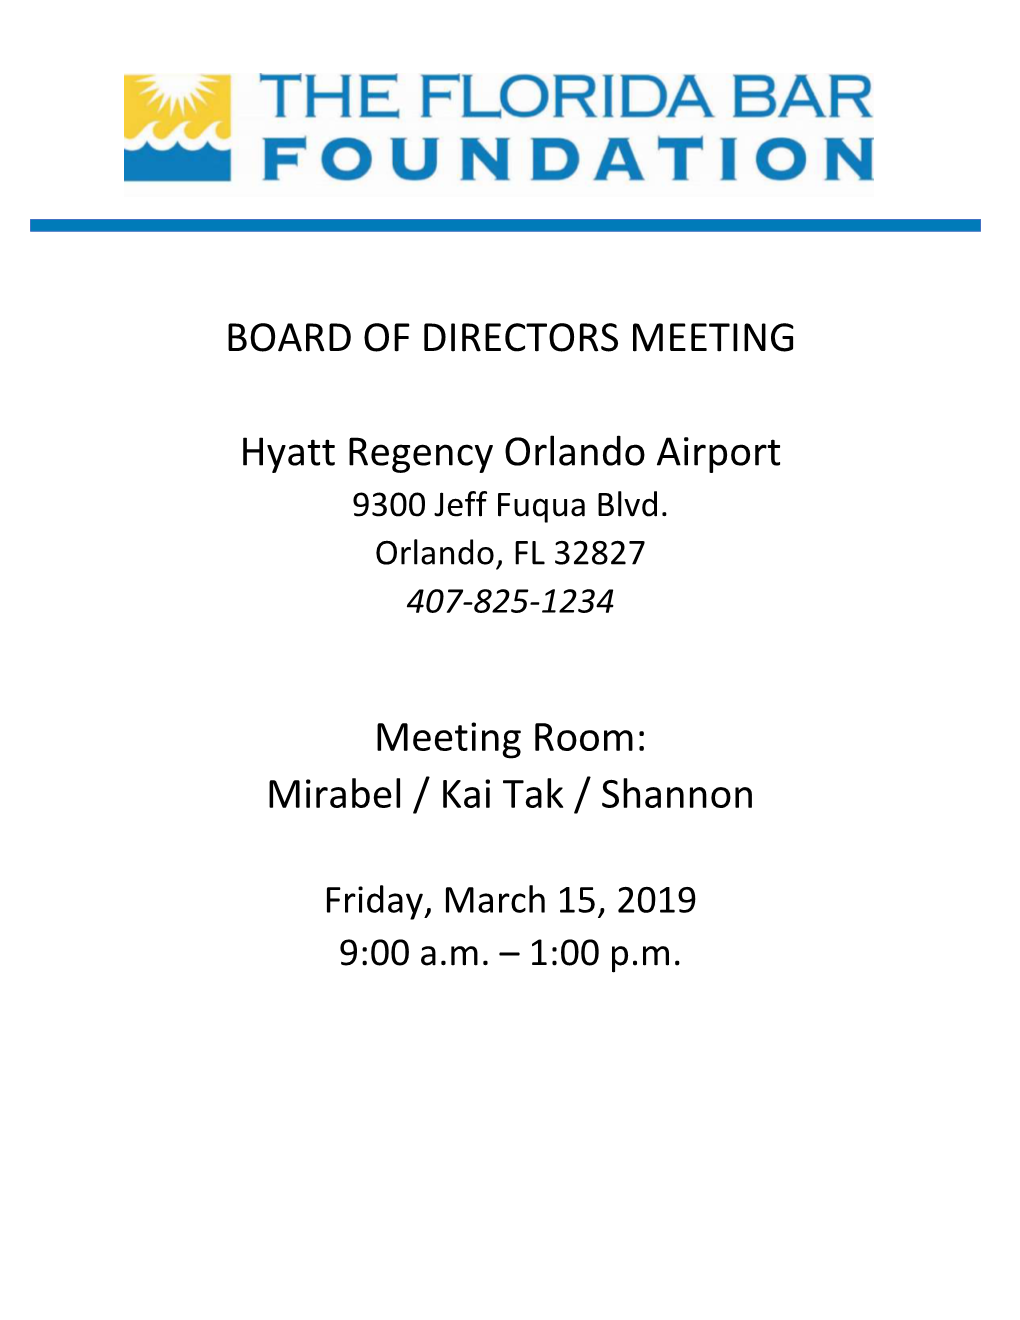 Board of Directors Meeting Hyatt Regency Orlando Airport Orlando, FL